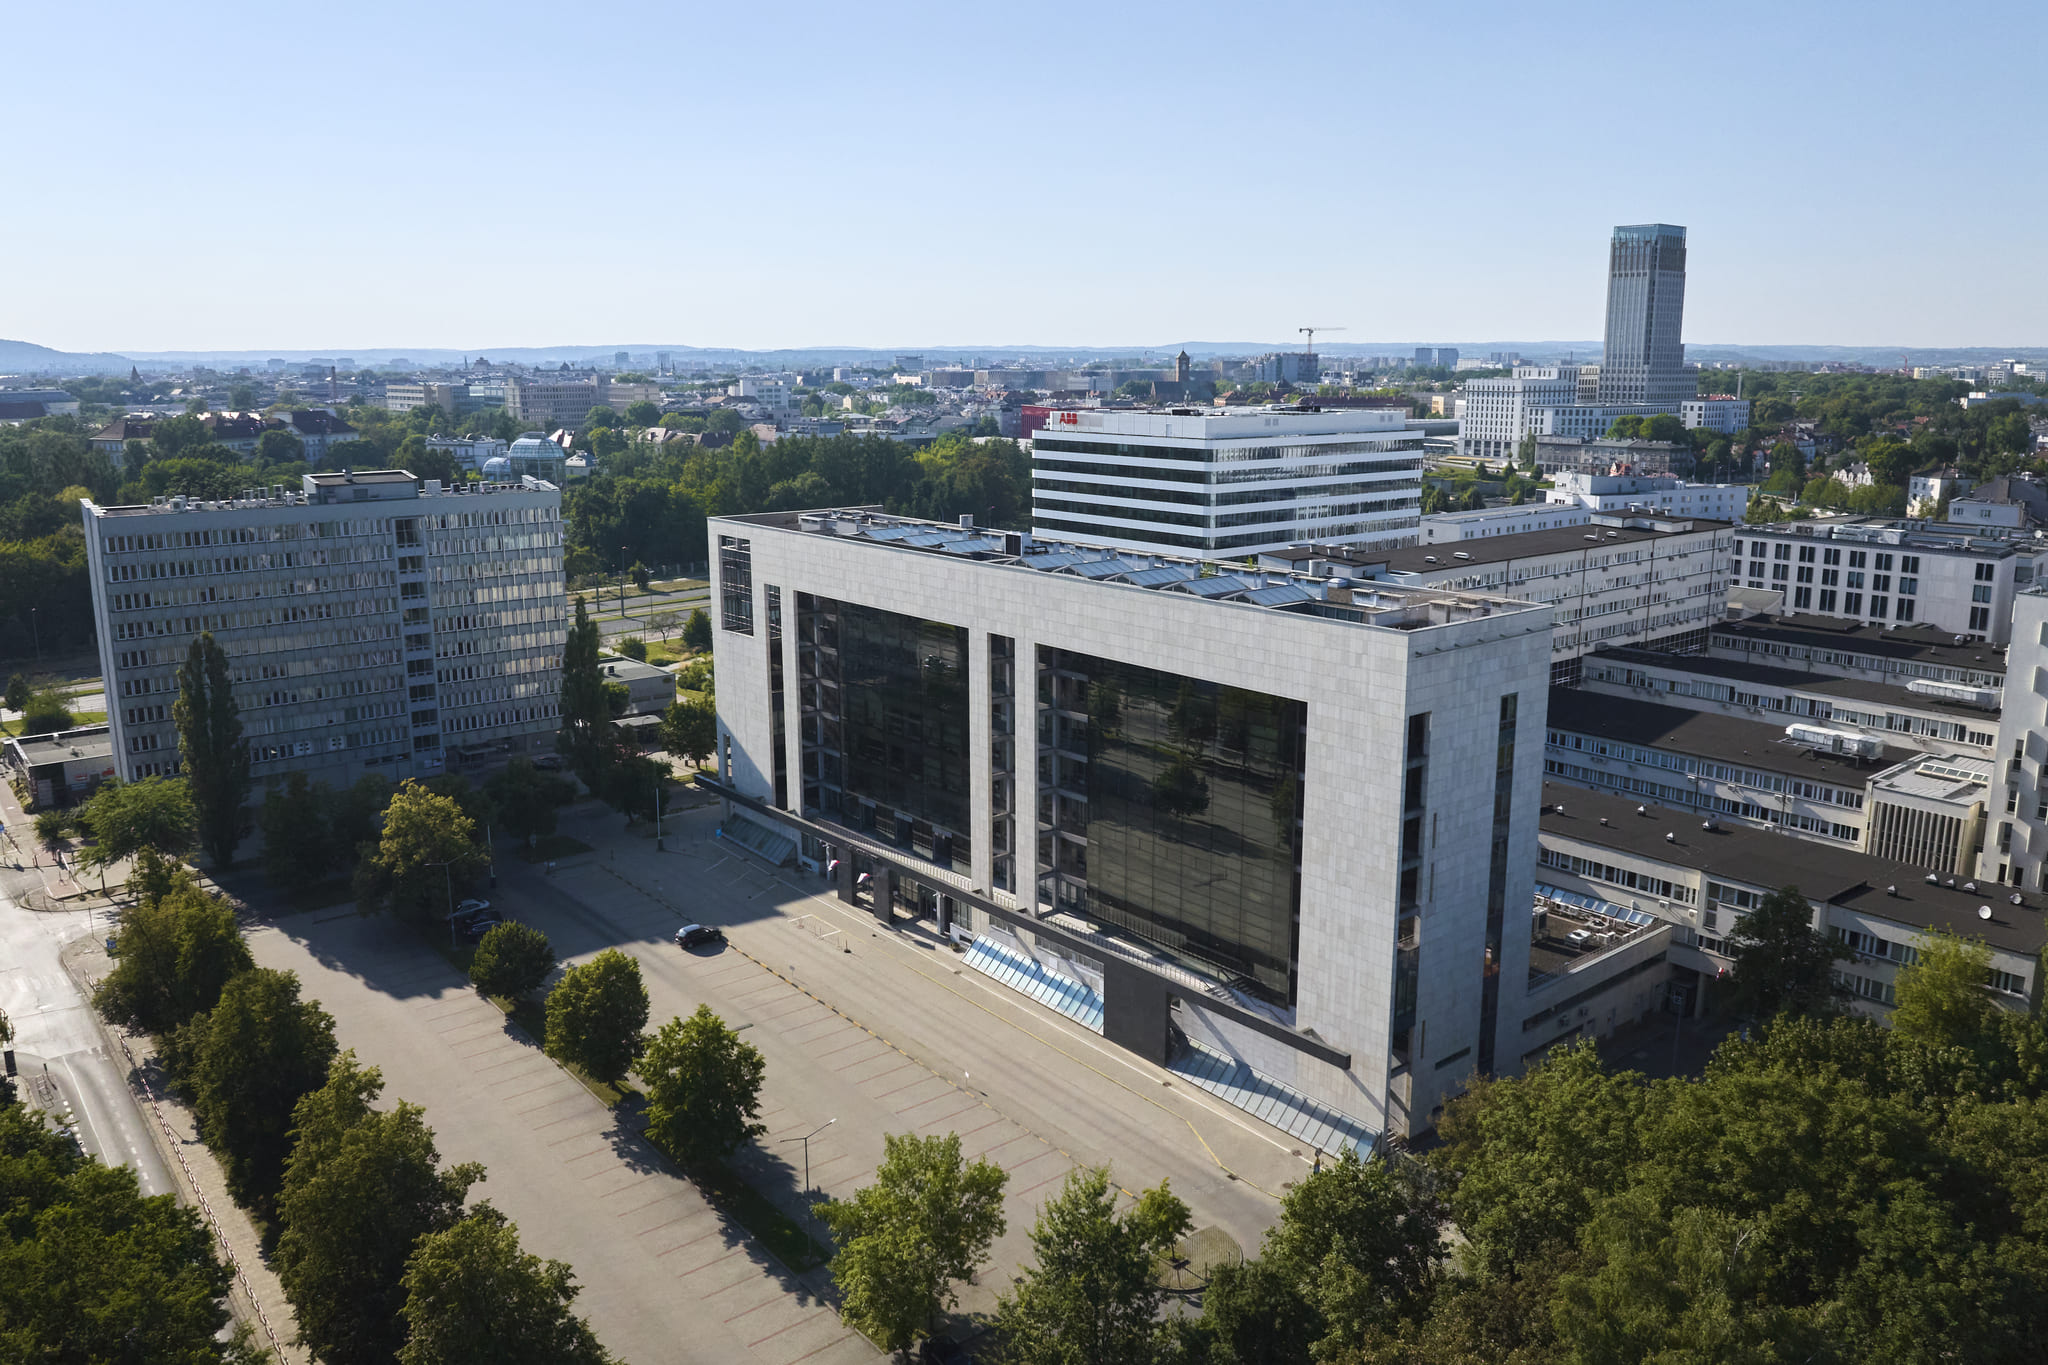 Rozbudowa Sądu Okręgowego w Krakowie – budowa pawilonu K